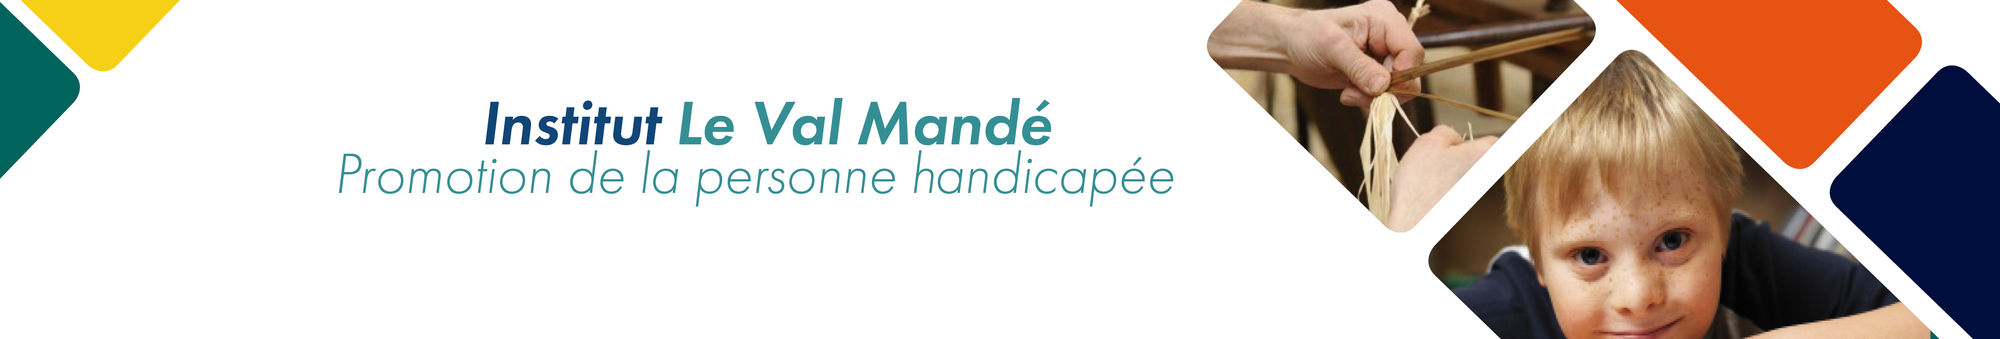 INSTITUT LE VAL MANDE